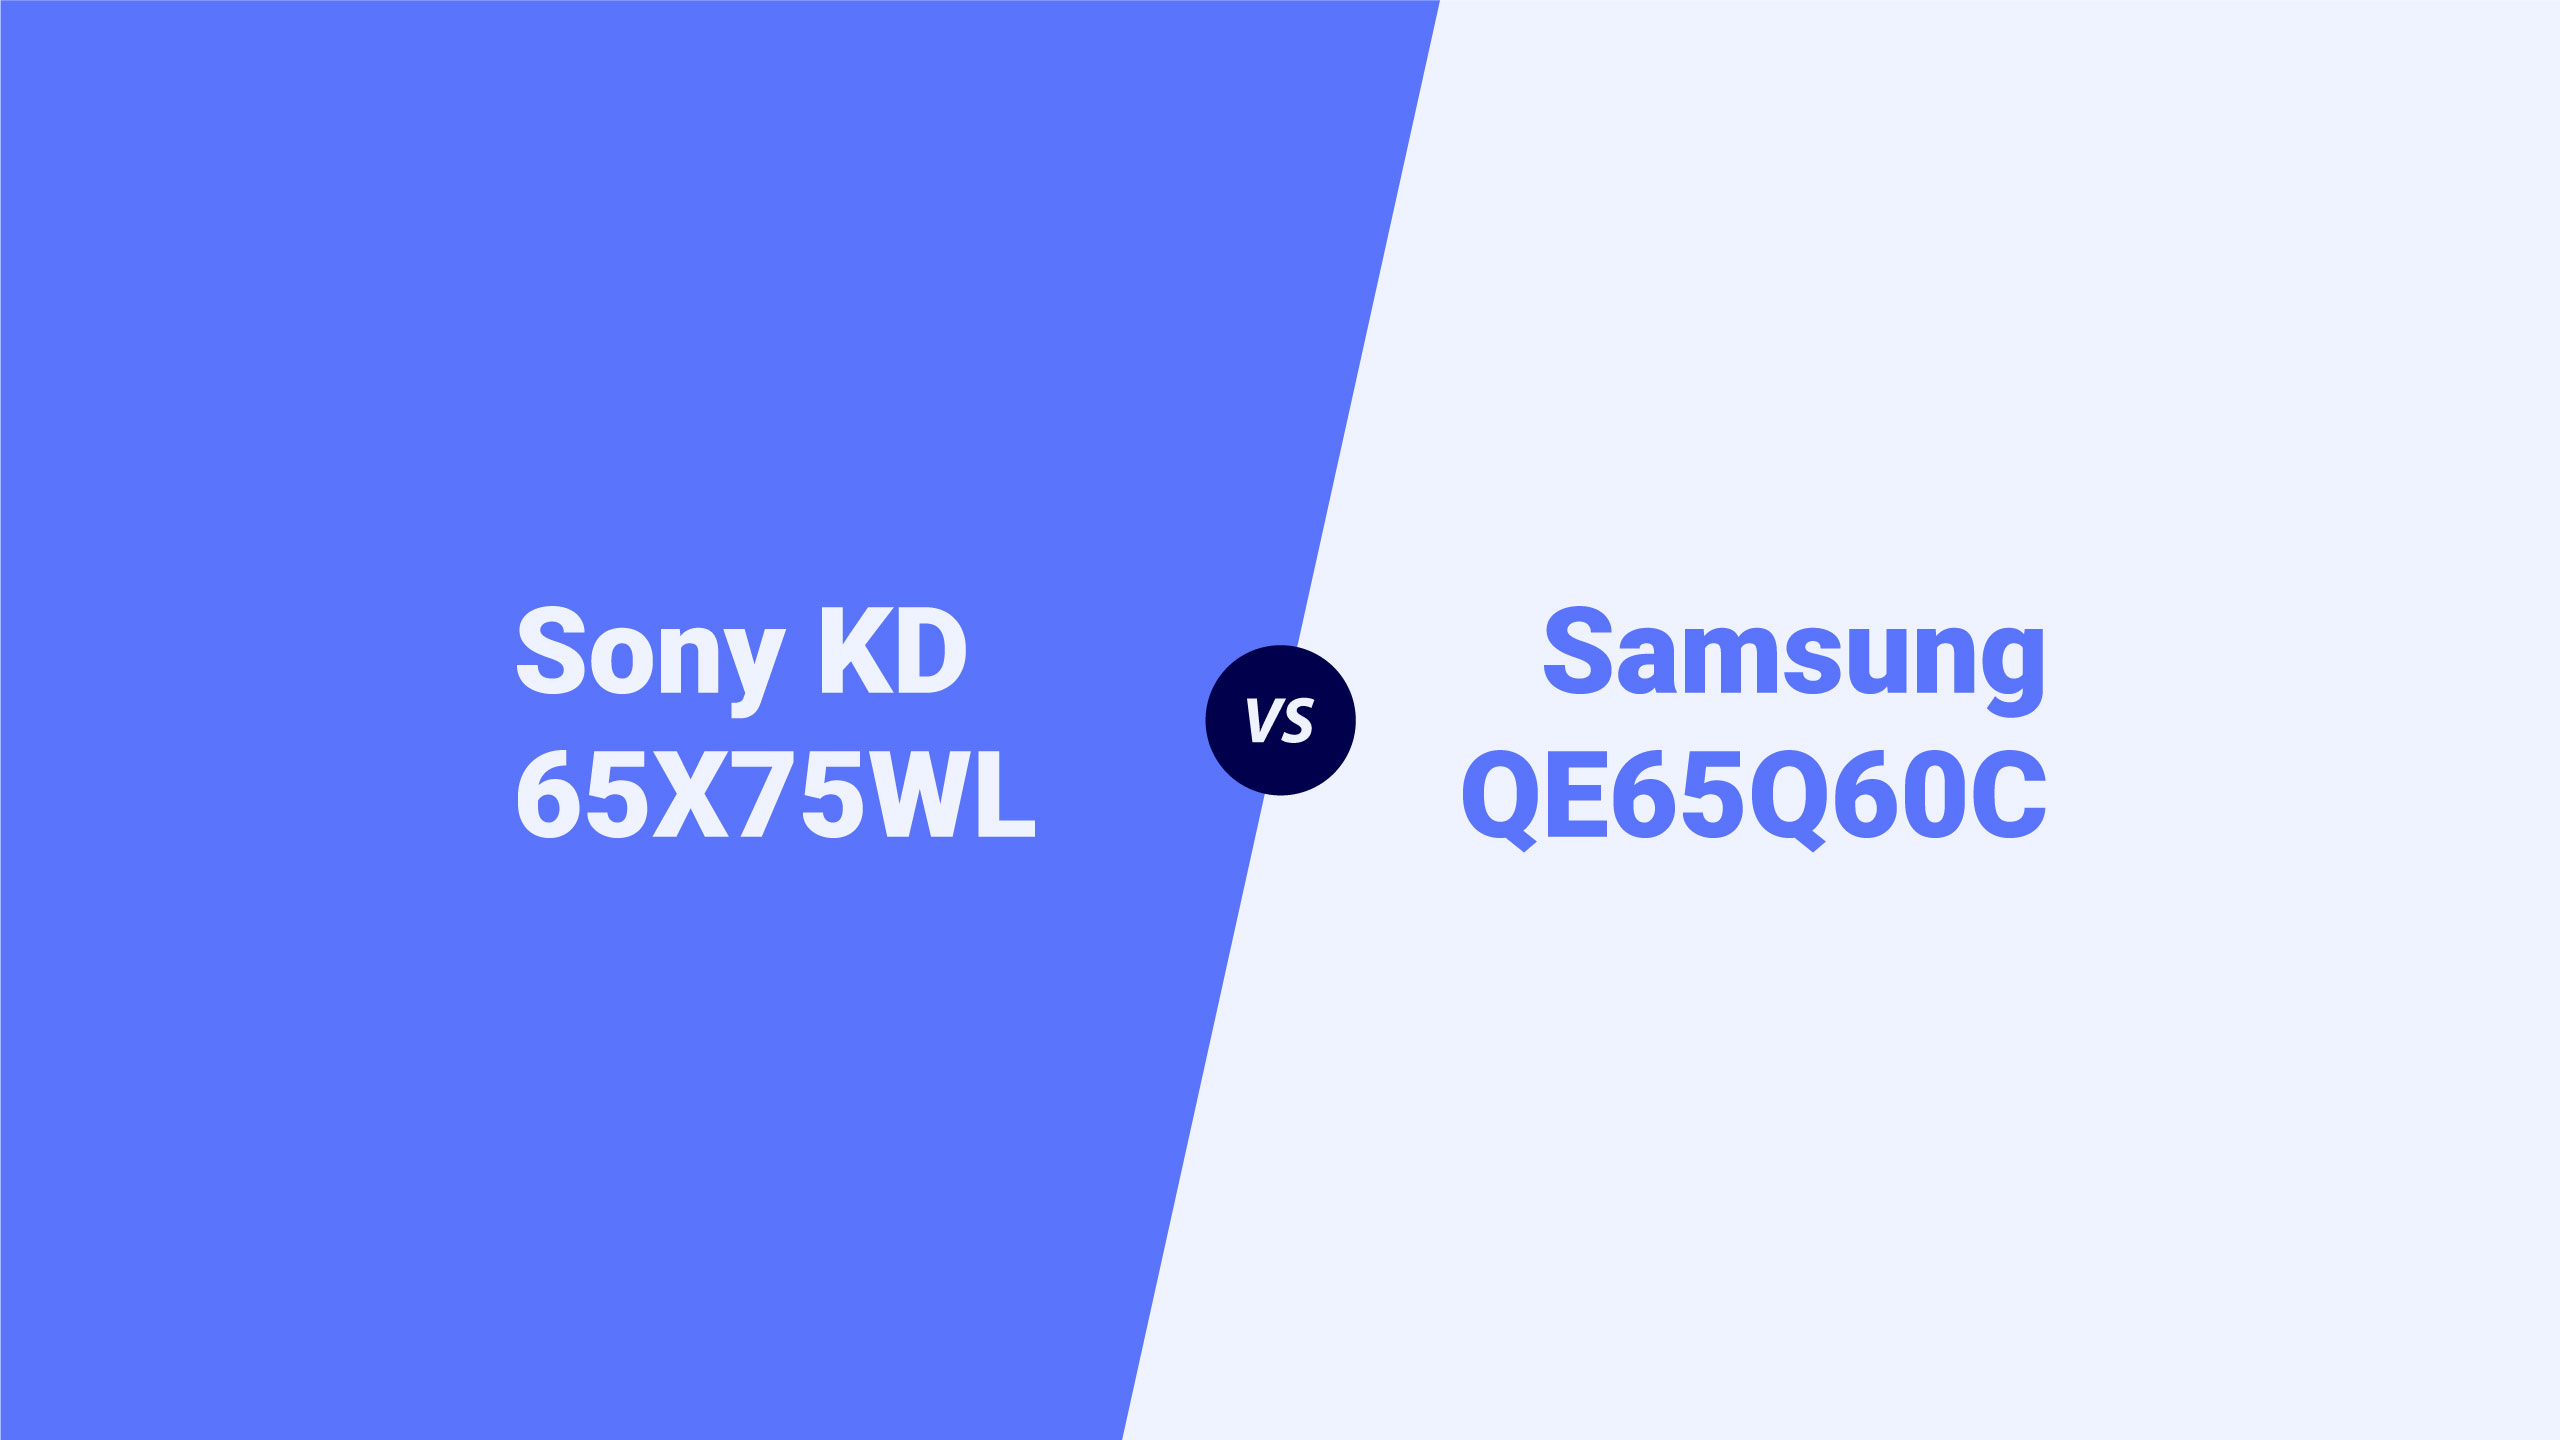 Sony KD 65X75WL vs Samsung QE65Q60C